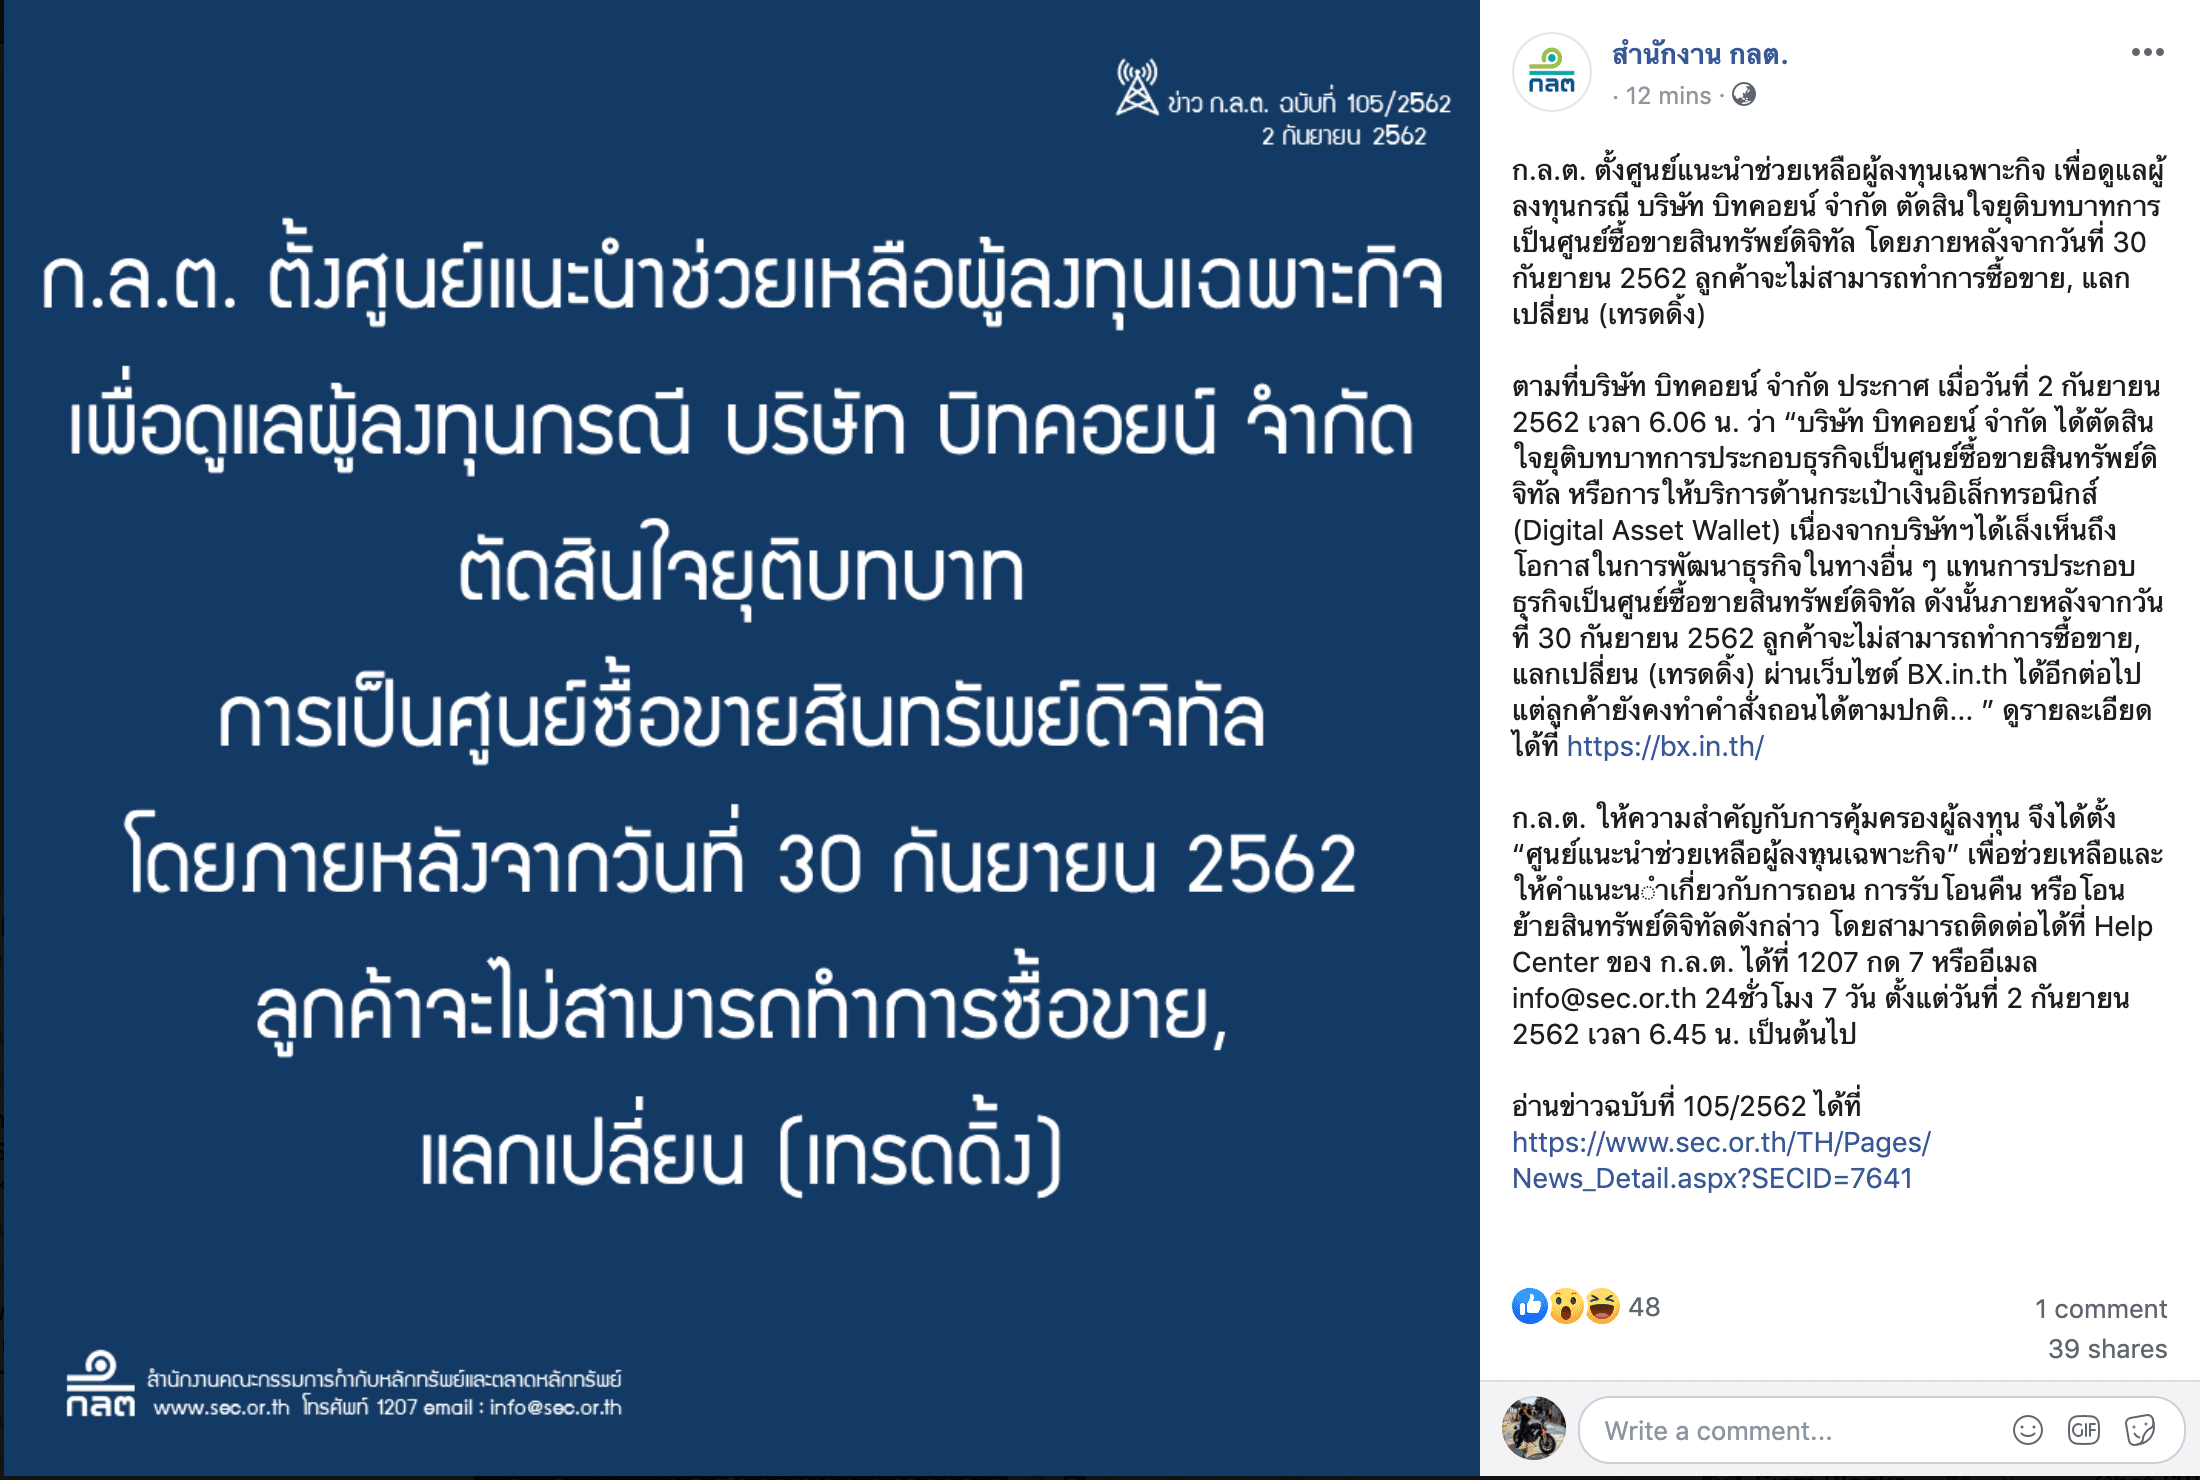 เว็บเทรด Bitcoin อันดับหนึ่งของไทย Bx ประกาศยุติให้บริการศูนย์ซื้อขายสินทรัพยดิจิทัลแล้ว  - Siam Blockchain